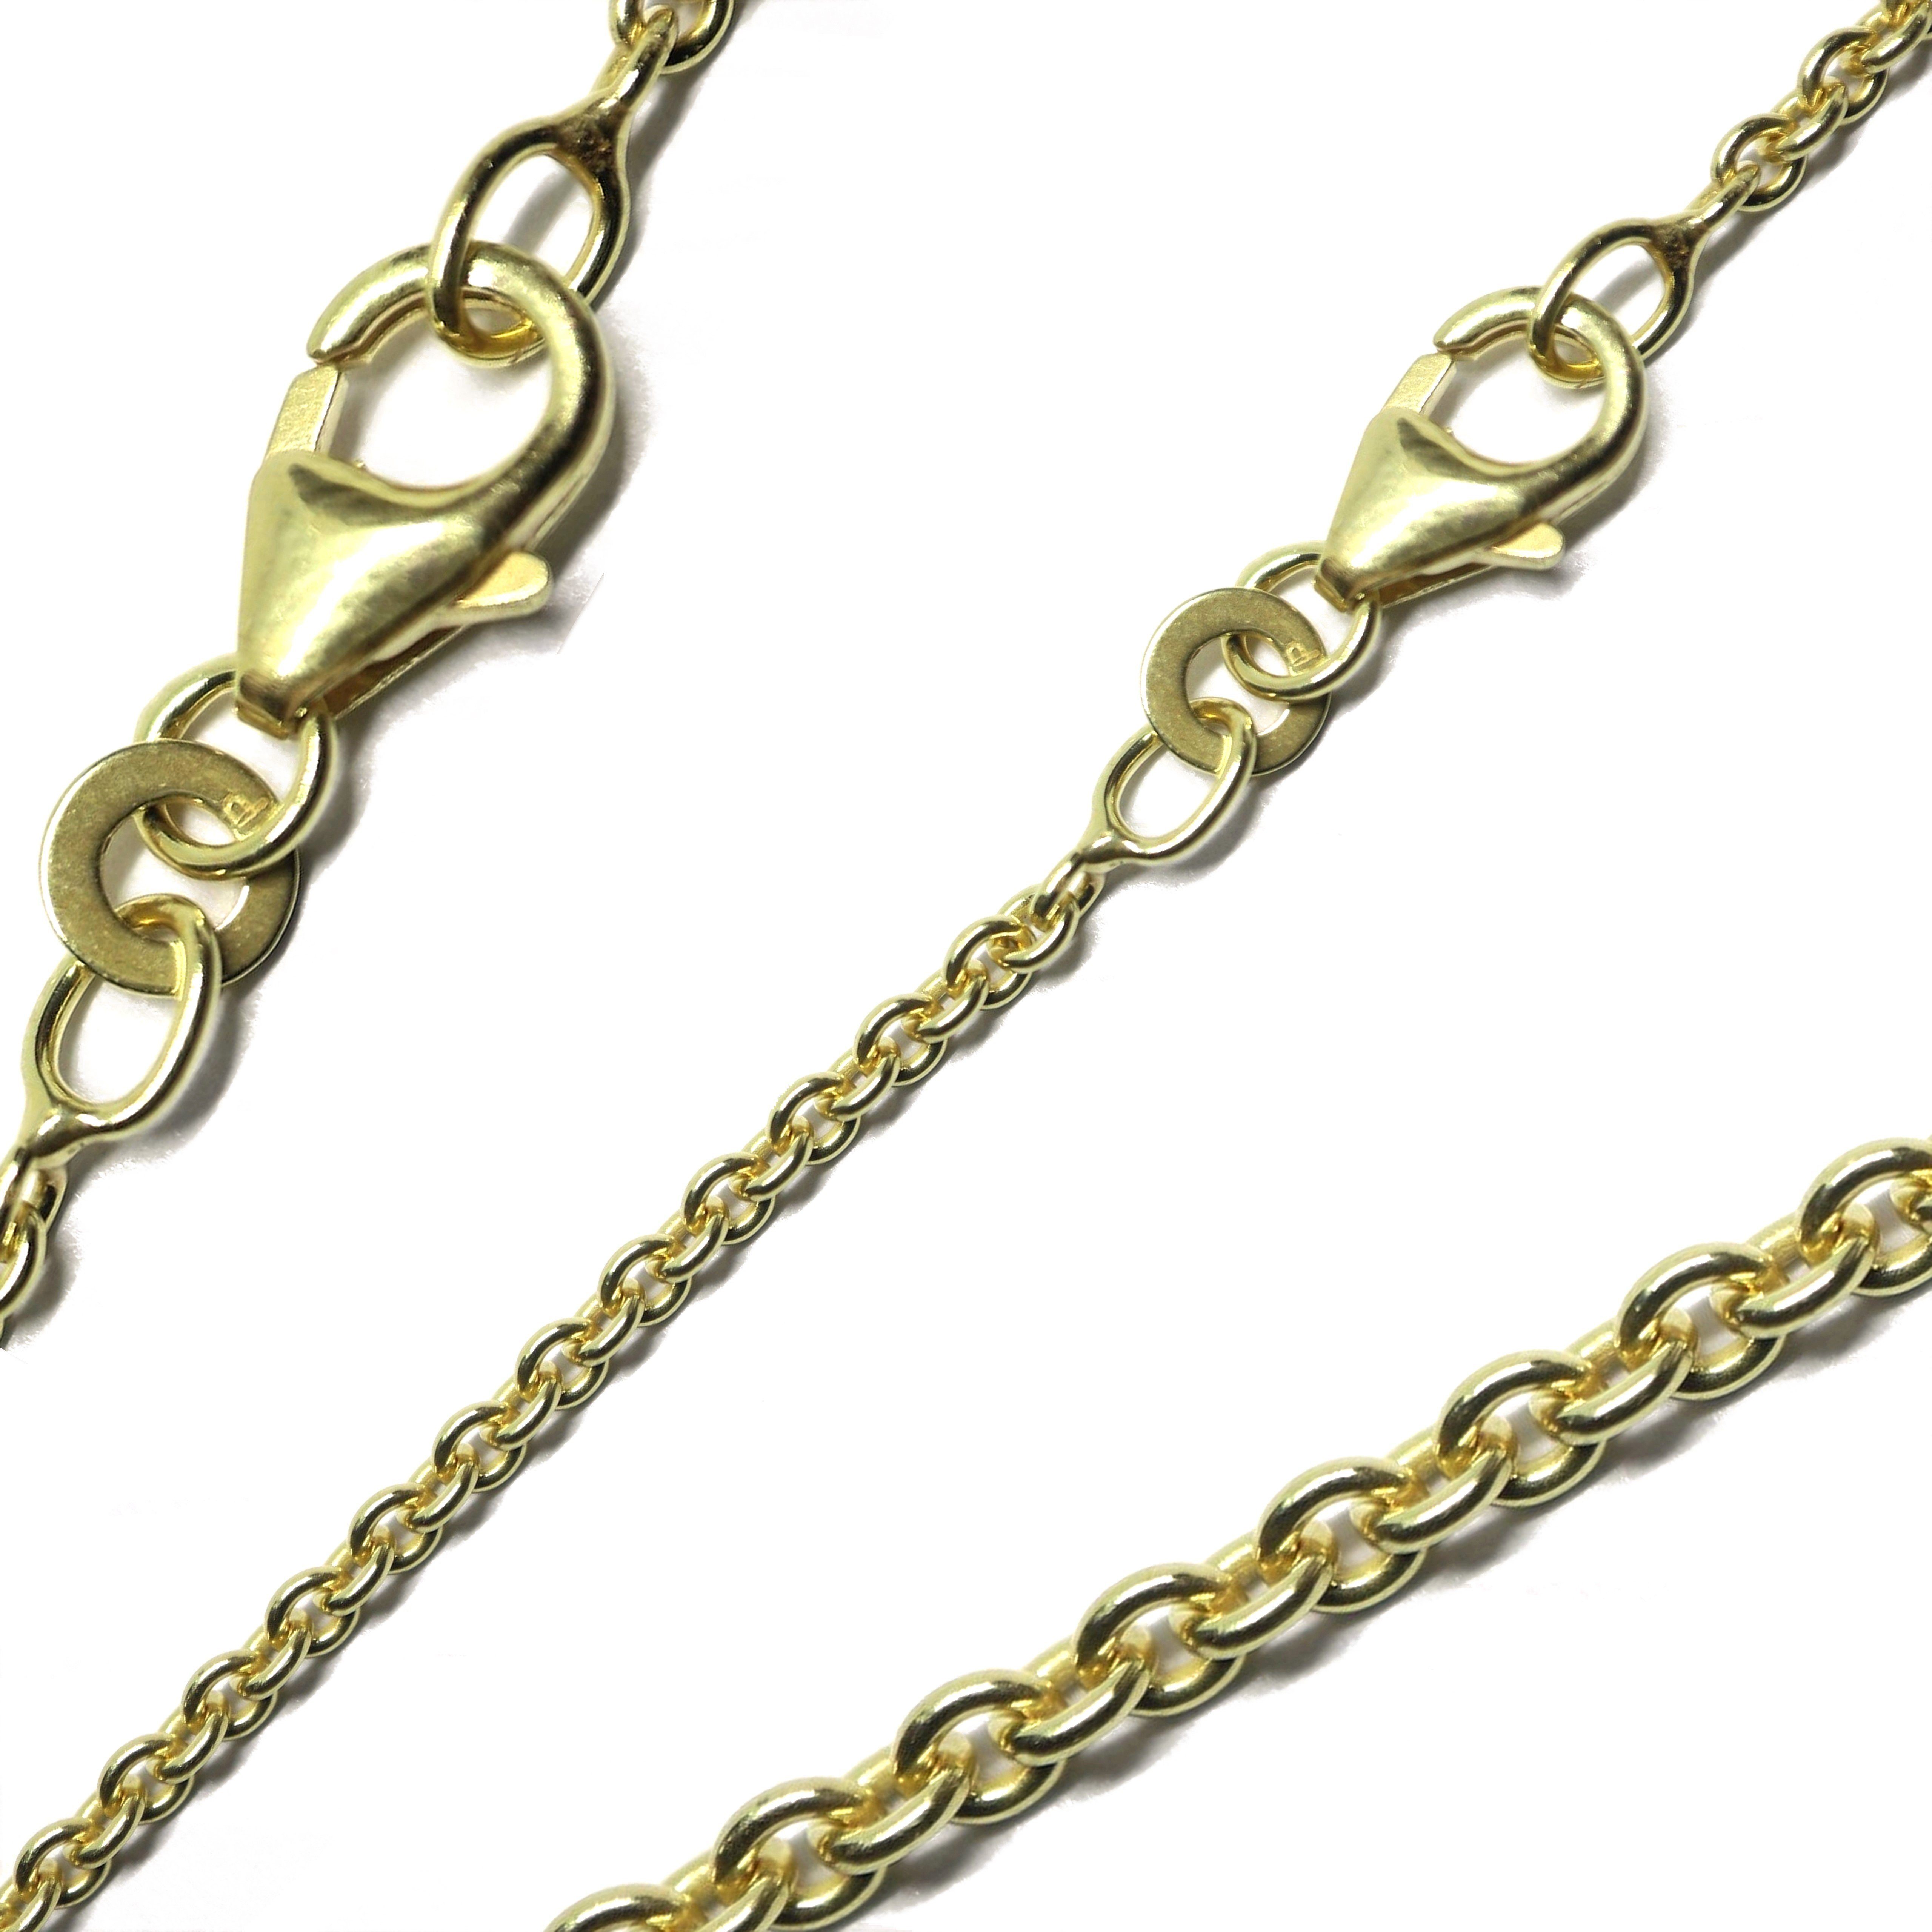 G & J Collier Ankerkette rund 333 8K Gold 2,00mm 42-60cm hochwertige edle Halskette, Made in Germany | Ketten ohne Anhänger